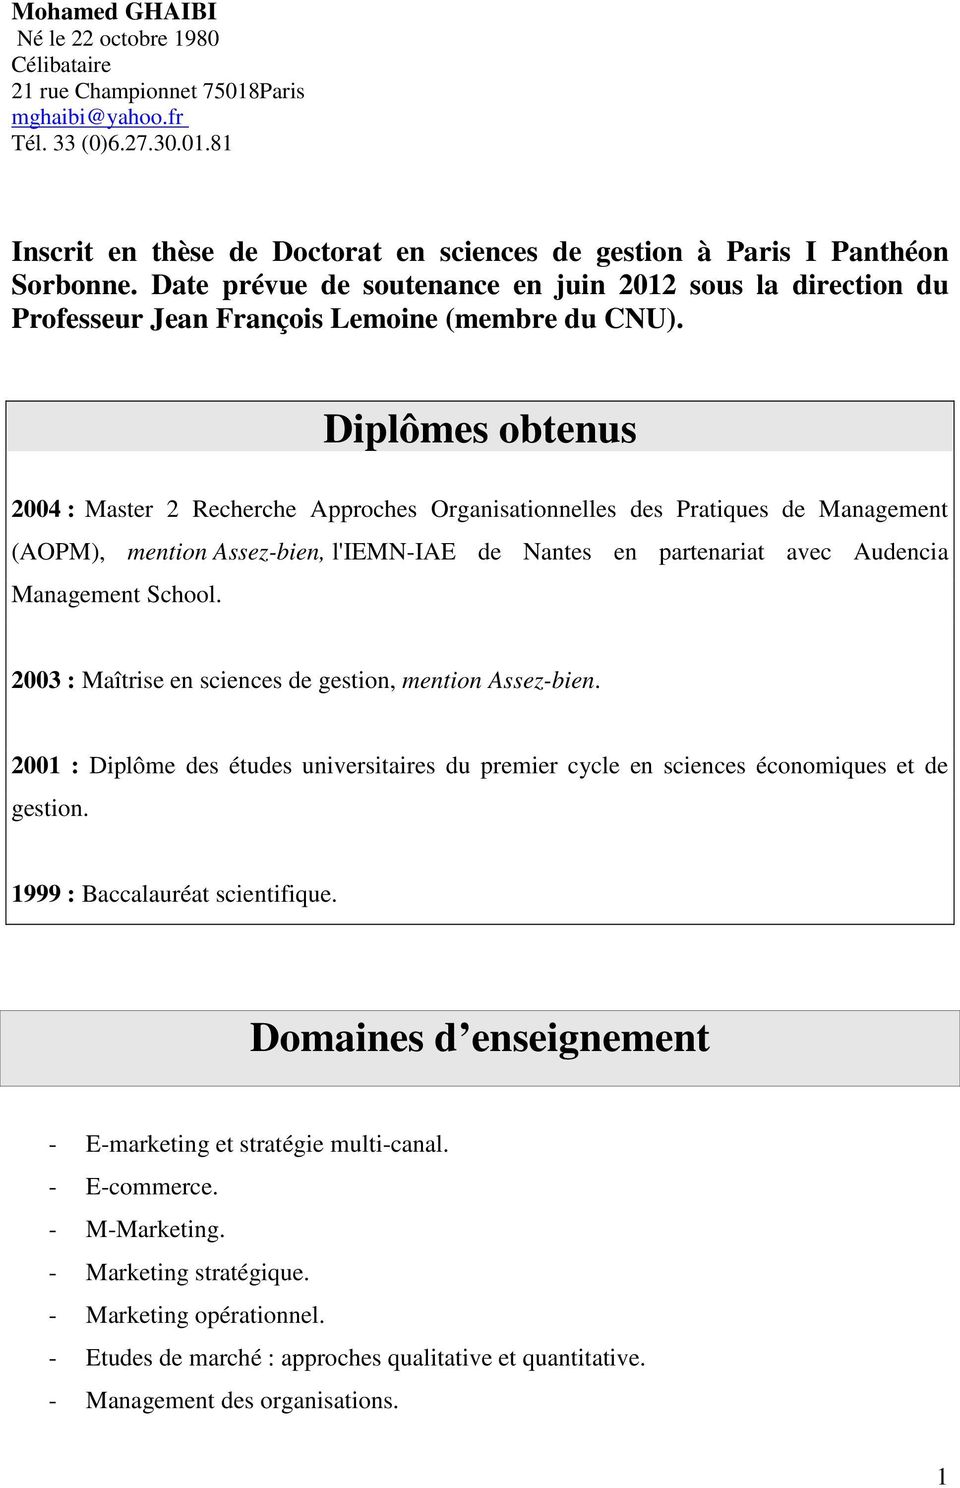 Diplômes obtenus 2004 : Recherche Approches Organisationnelles des Pratiques de Management (AOPM), mention Assez-bien, l'iemn-iae de Nantes en partenariat avec Audencia Management School.